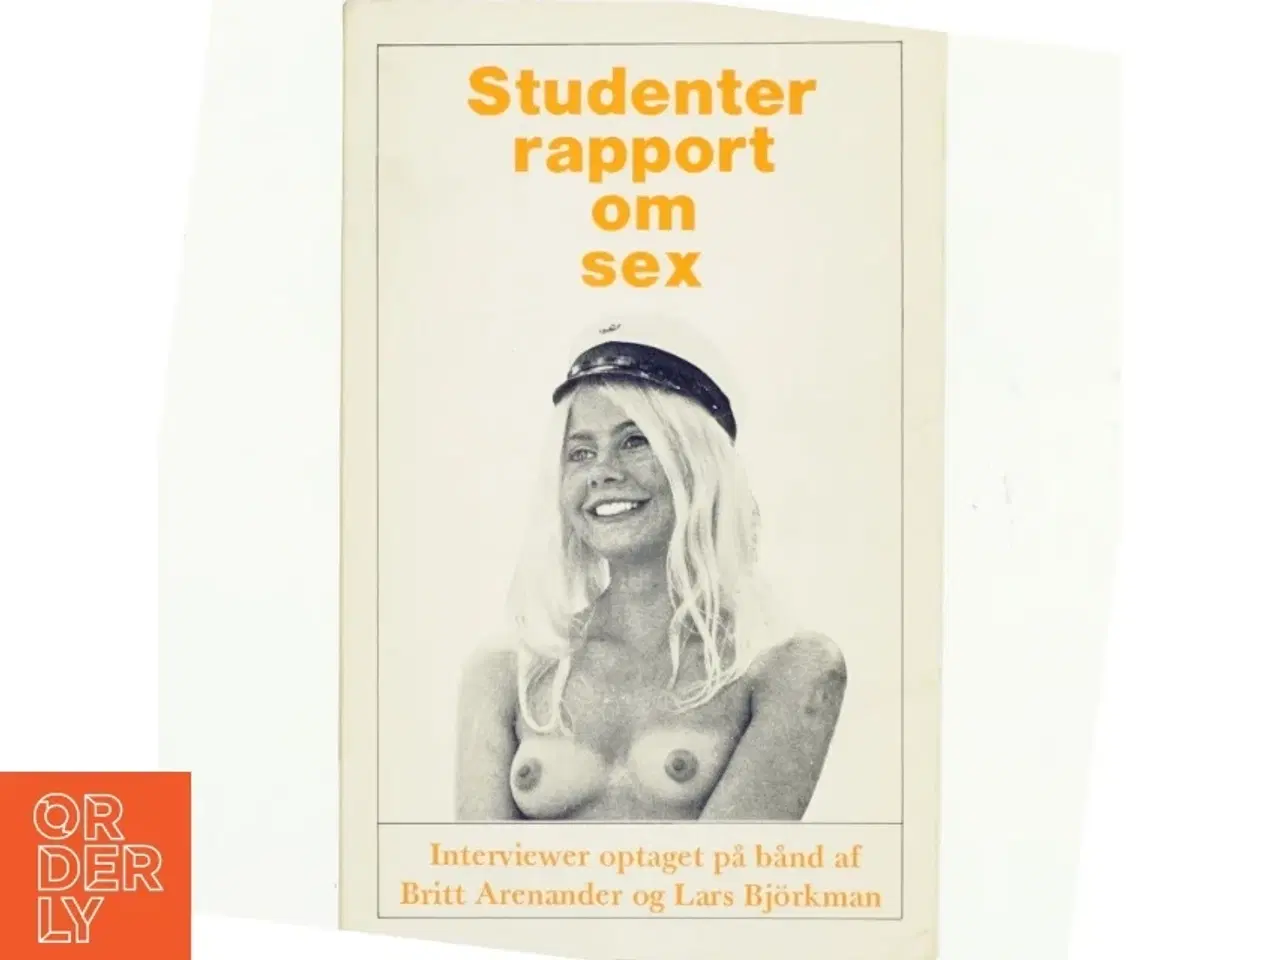 Billede 1 - Studenterrapport om sex af Brtitt Arenander og Lars Björkman (bog)